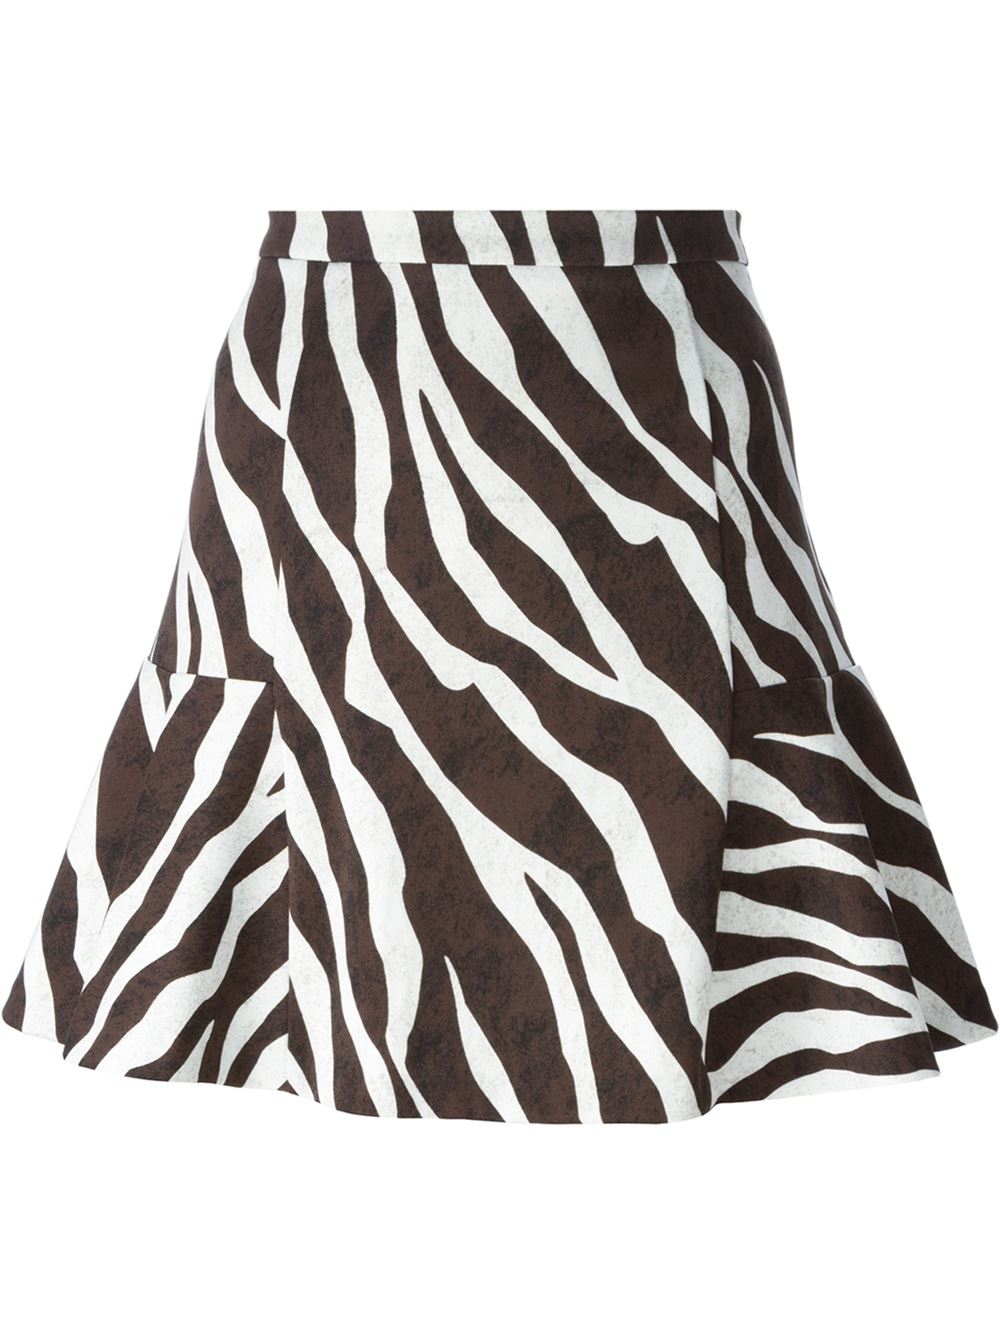 Michael Michael Kors Zebra Print Flared Skirt in Black